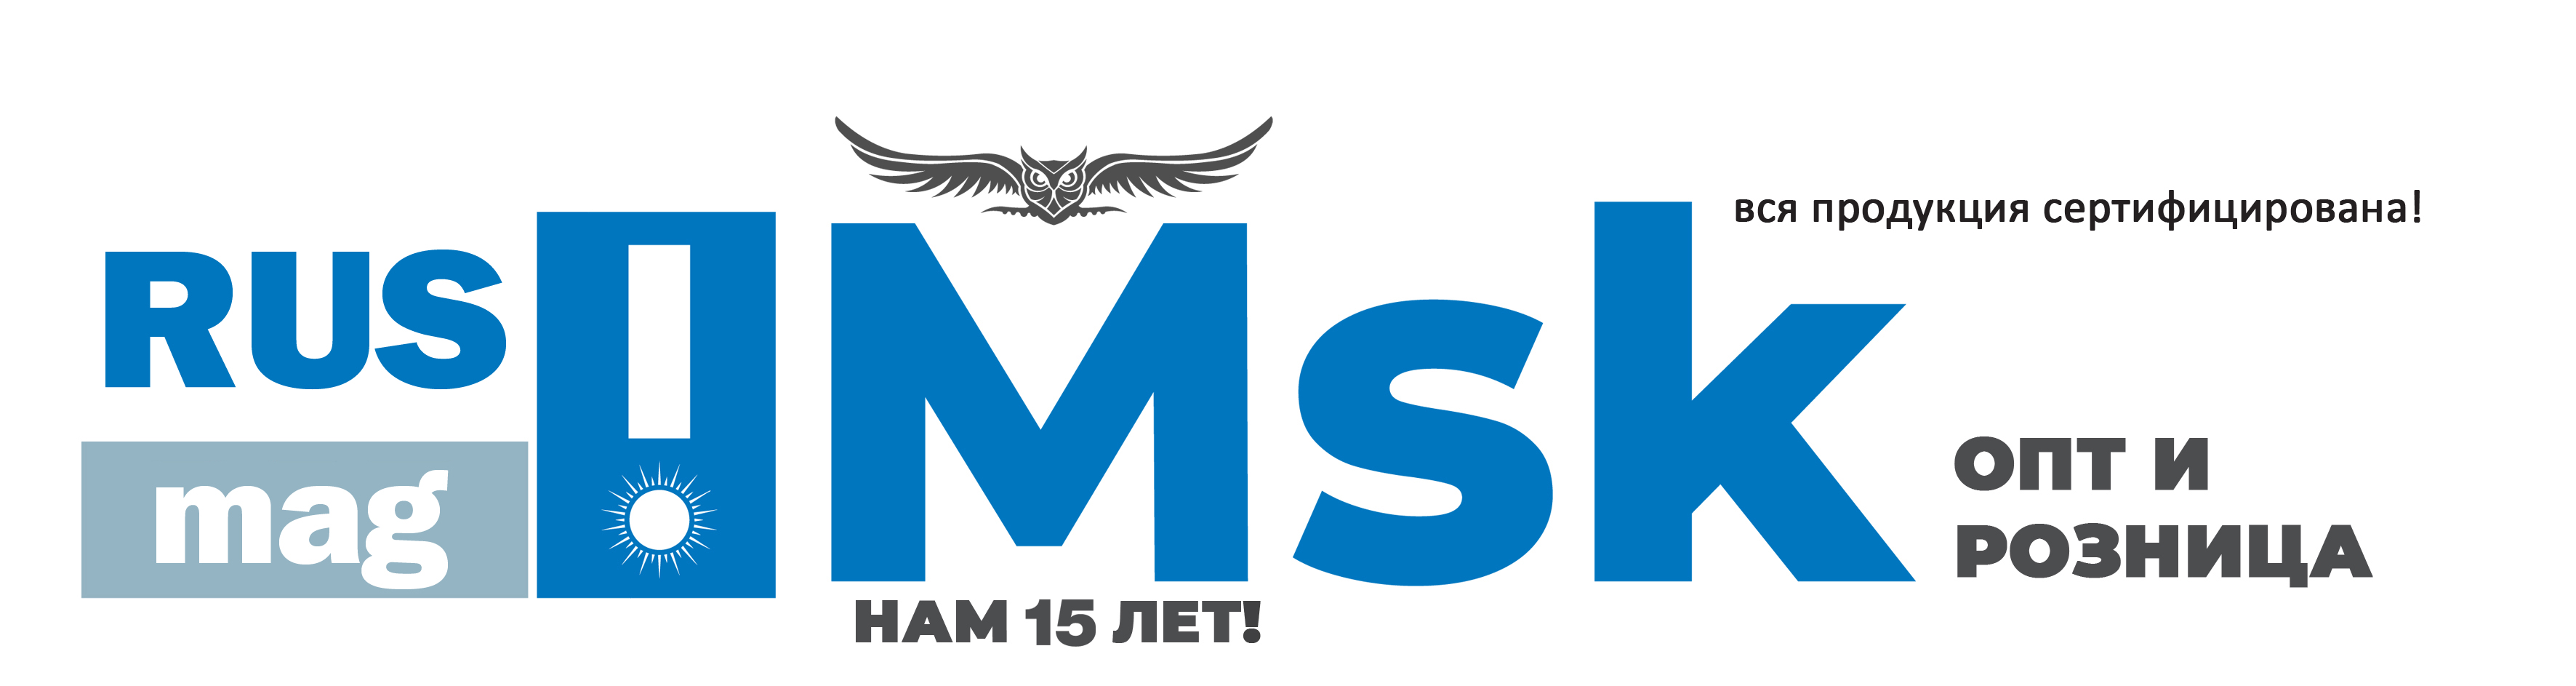 Интернет-магазин RusMag Msk Производственной компании ГК Фабрика СОВ 